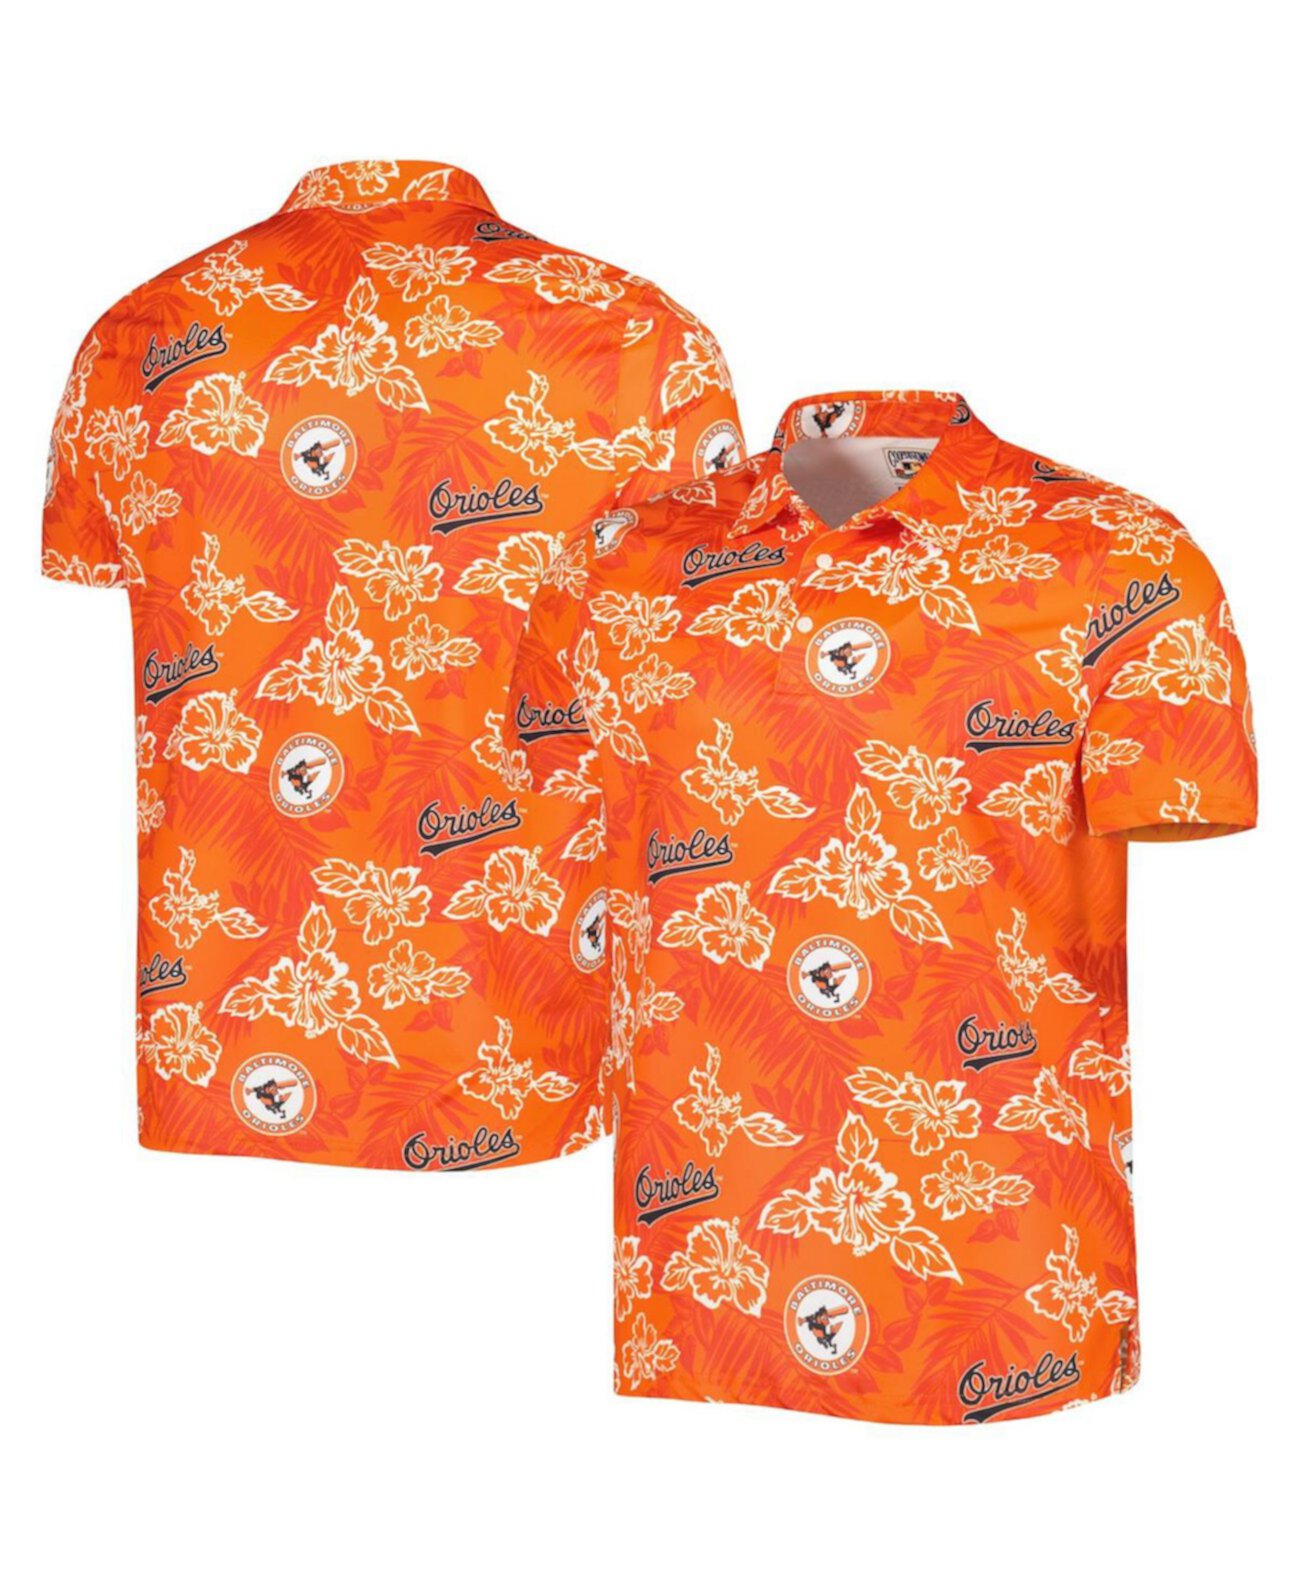 Мужская оранжевая рубашка-поло с принтом Baltimore Orioles Cooperstown Collection Puamana Reyn Spooner